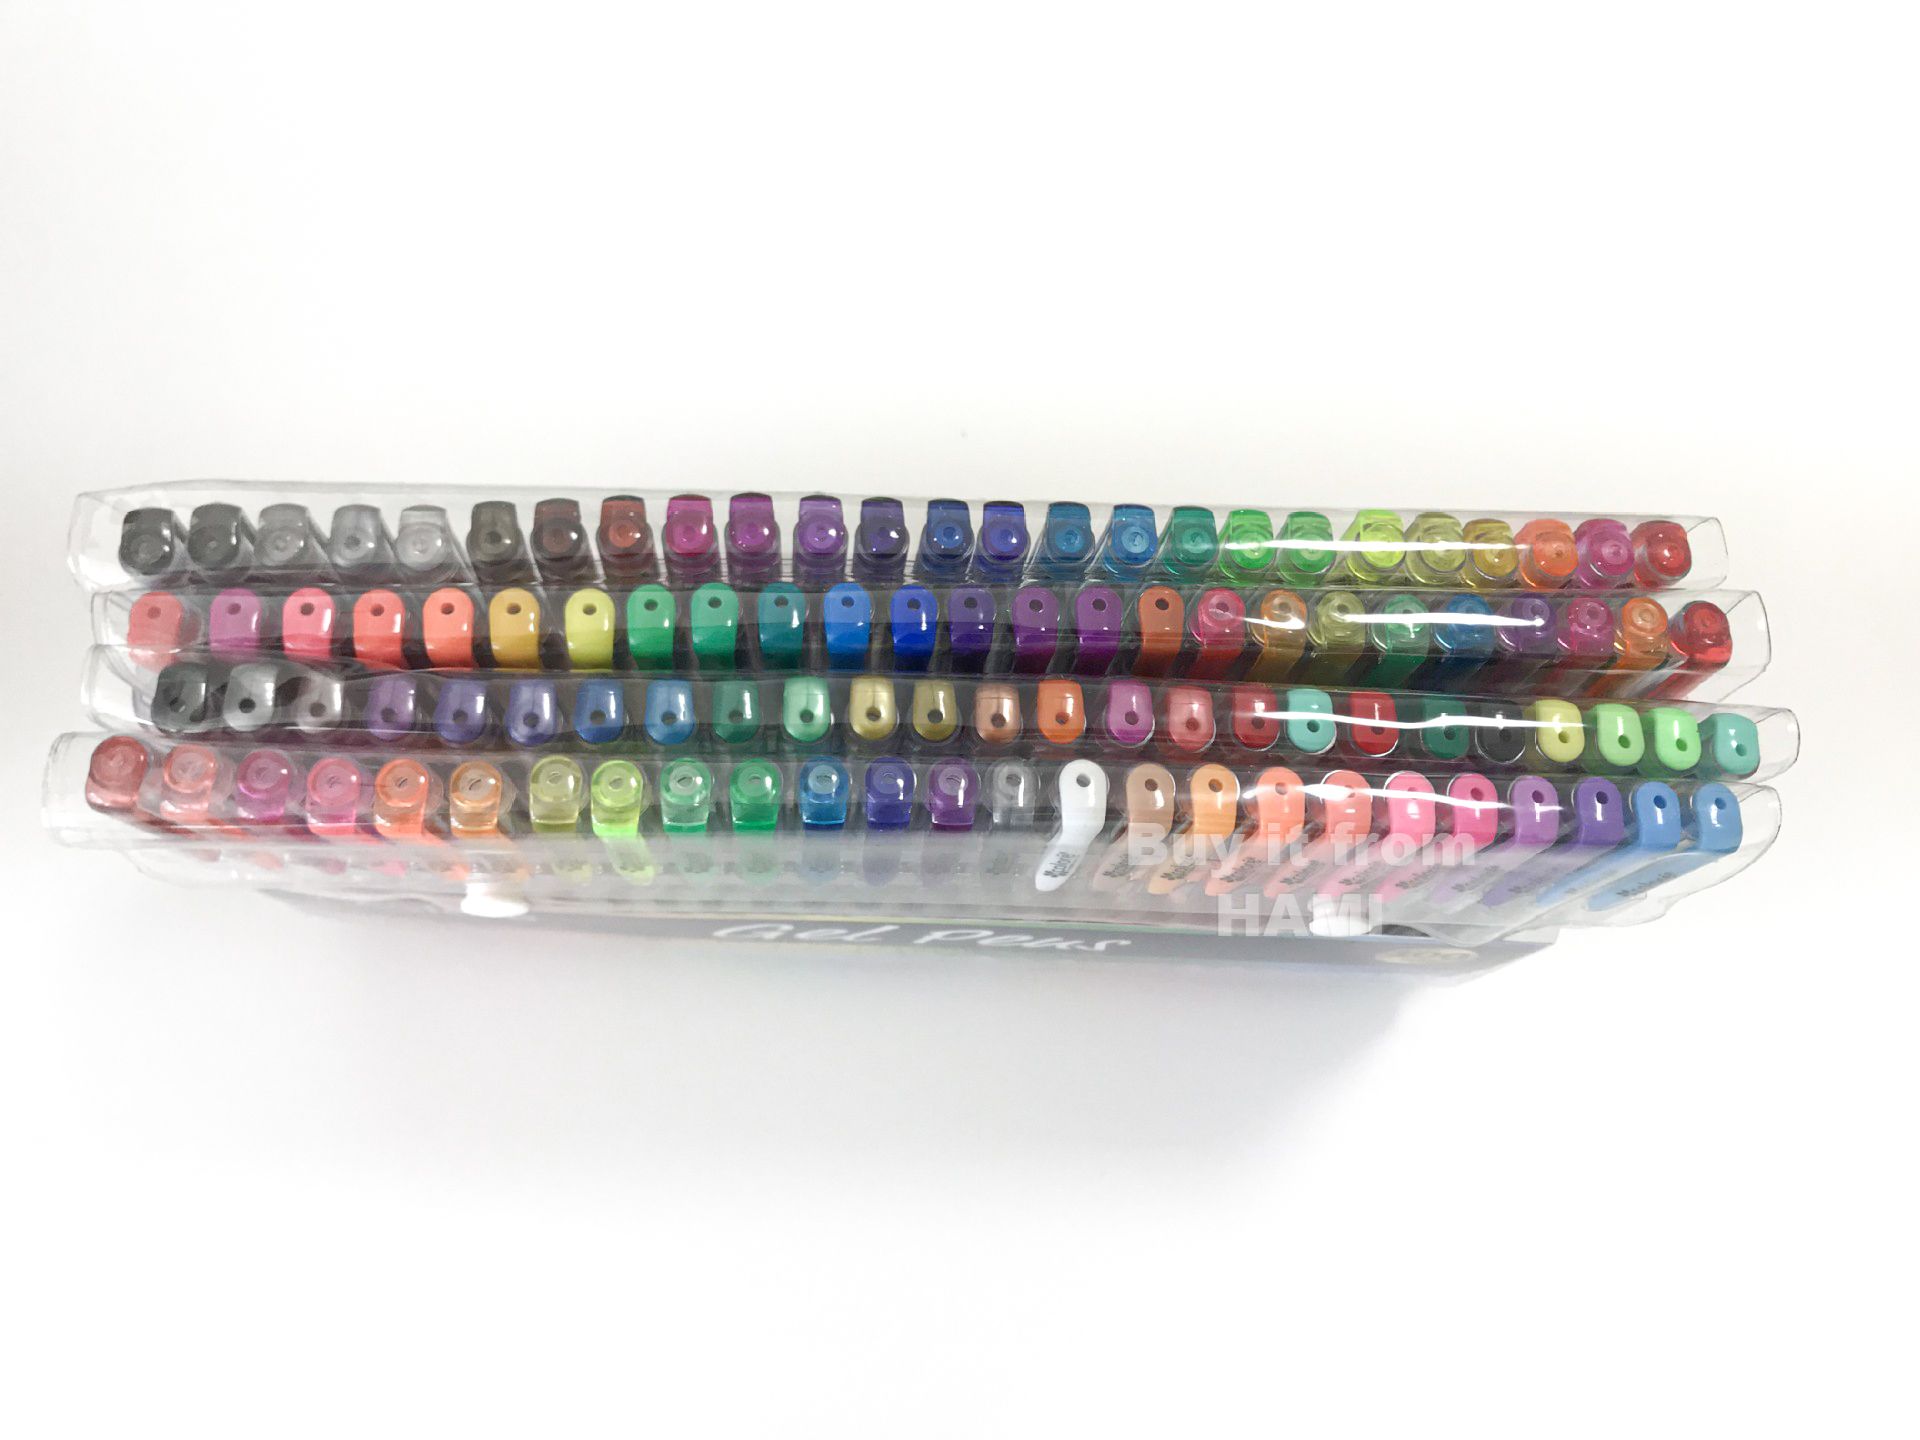  Bút bi nước mực gel nhiều màu 0.8mm Yover bộ 100 màu - YL-G100 